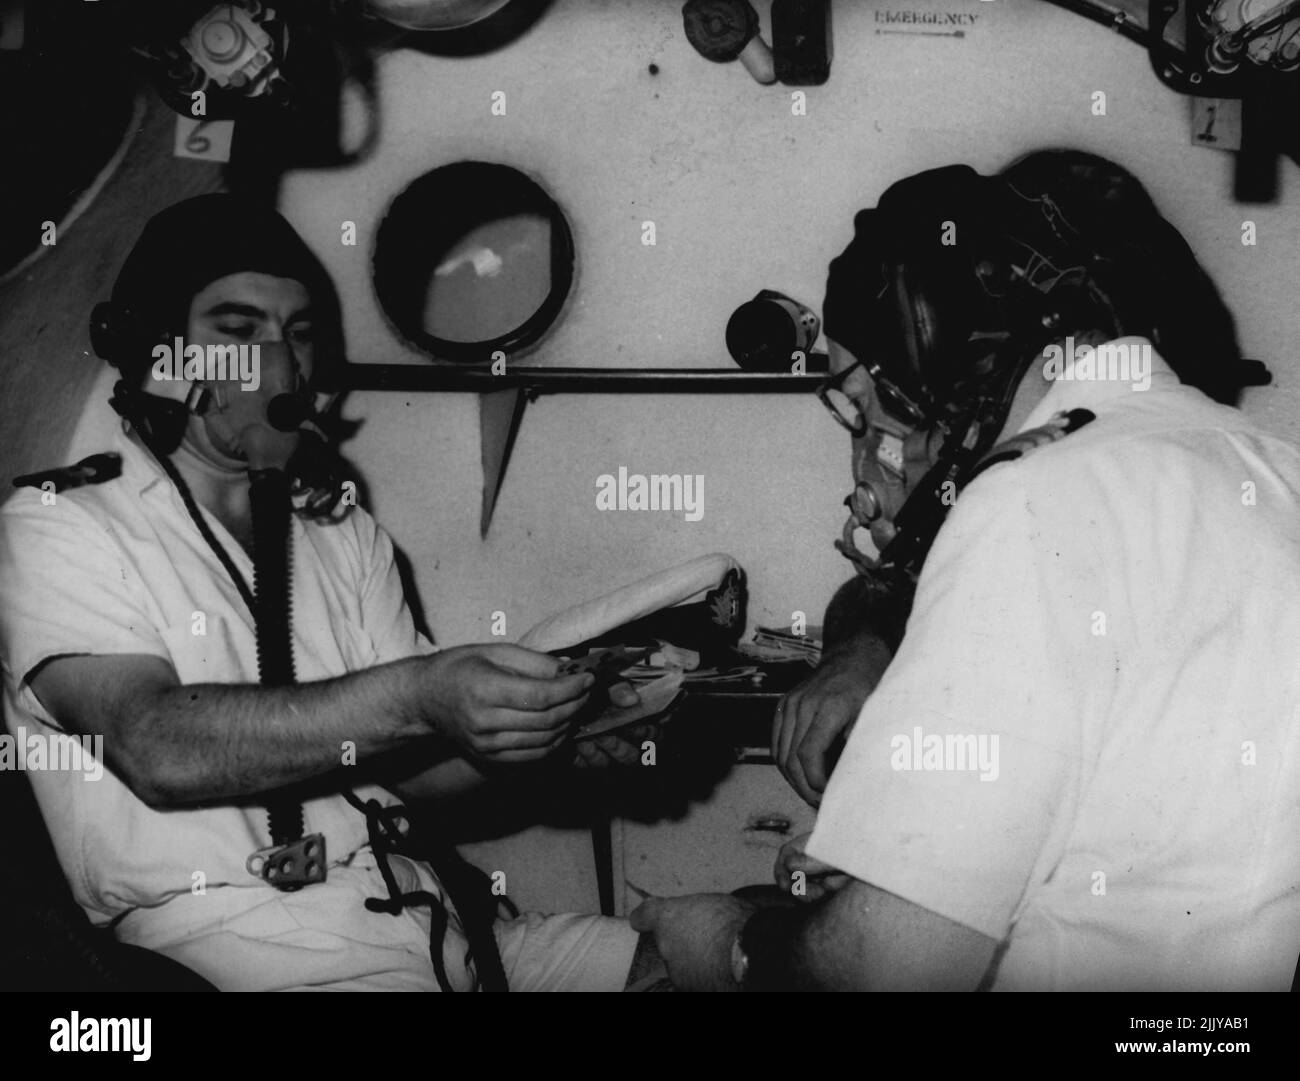 Le Lt K. Suriano, facultés mentales perdues par manque d'oxygène tente de traiter des cartes au chirurgien-commandant R. COPlanS, à droite, pendant un essai en hauteur dans une chambre de compression. 23 mars 1955. Banque D'Images